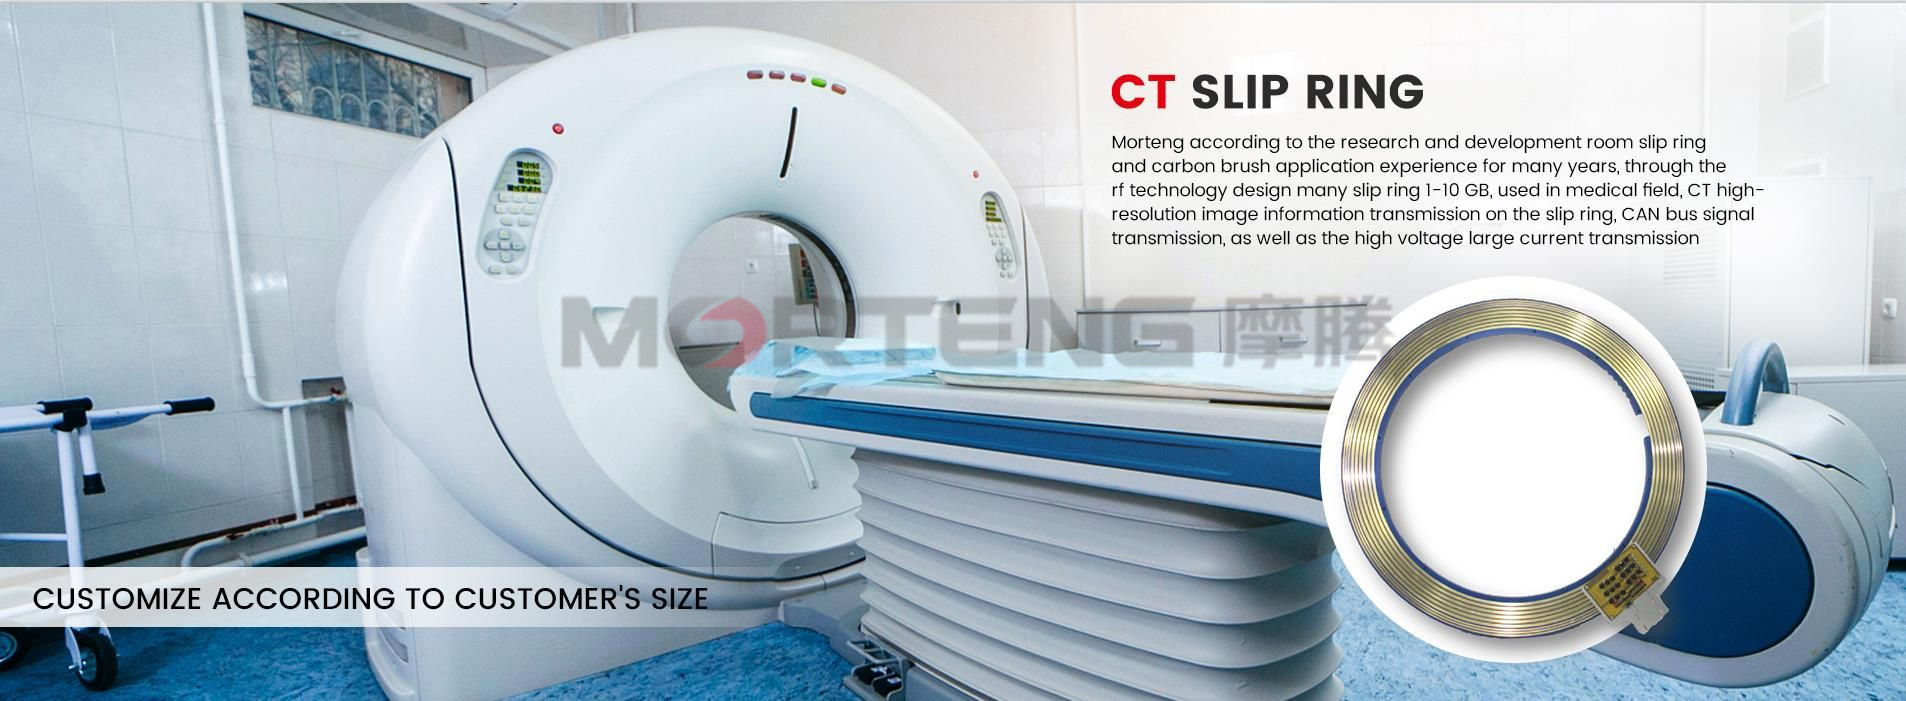 Slip Ring CT Scan Medis (2)